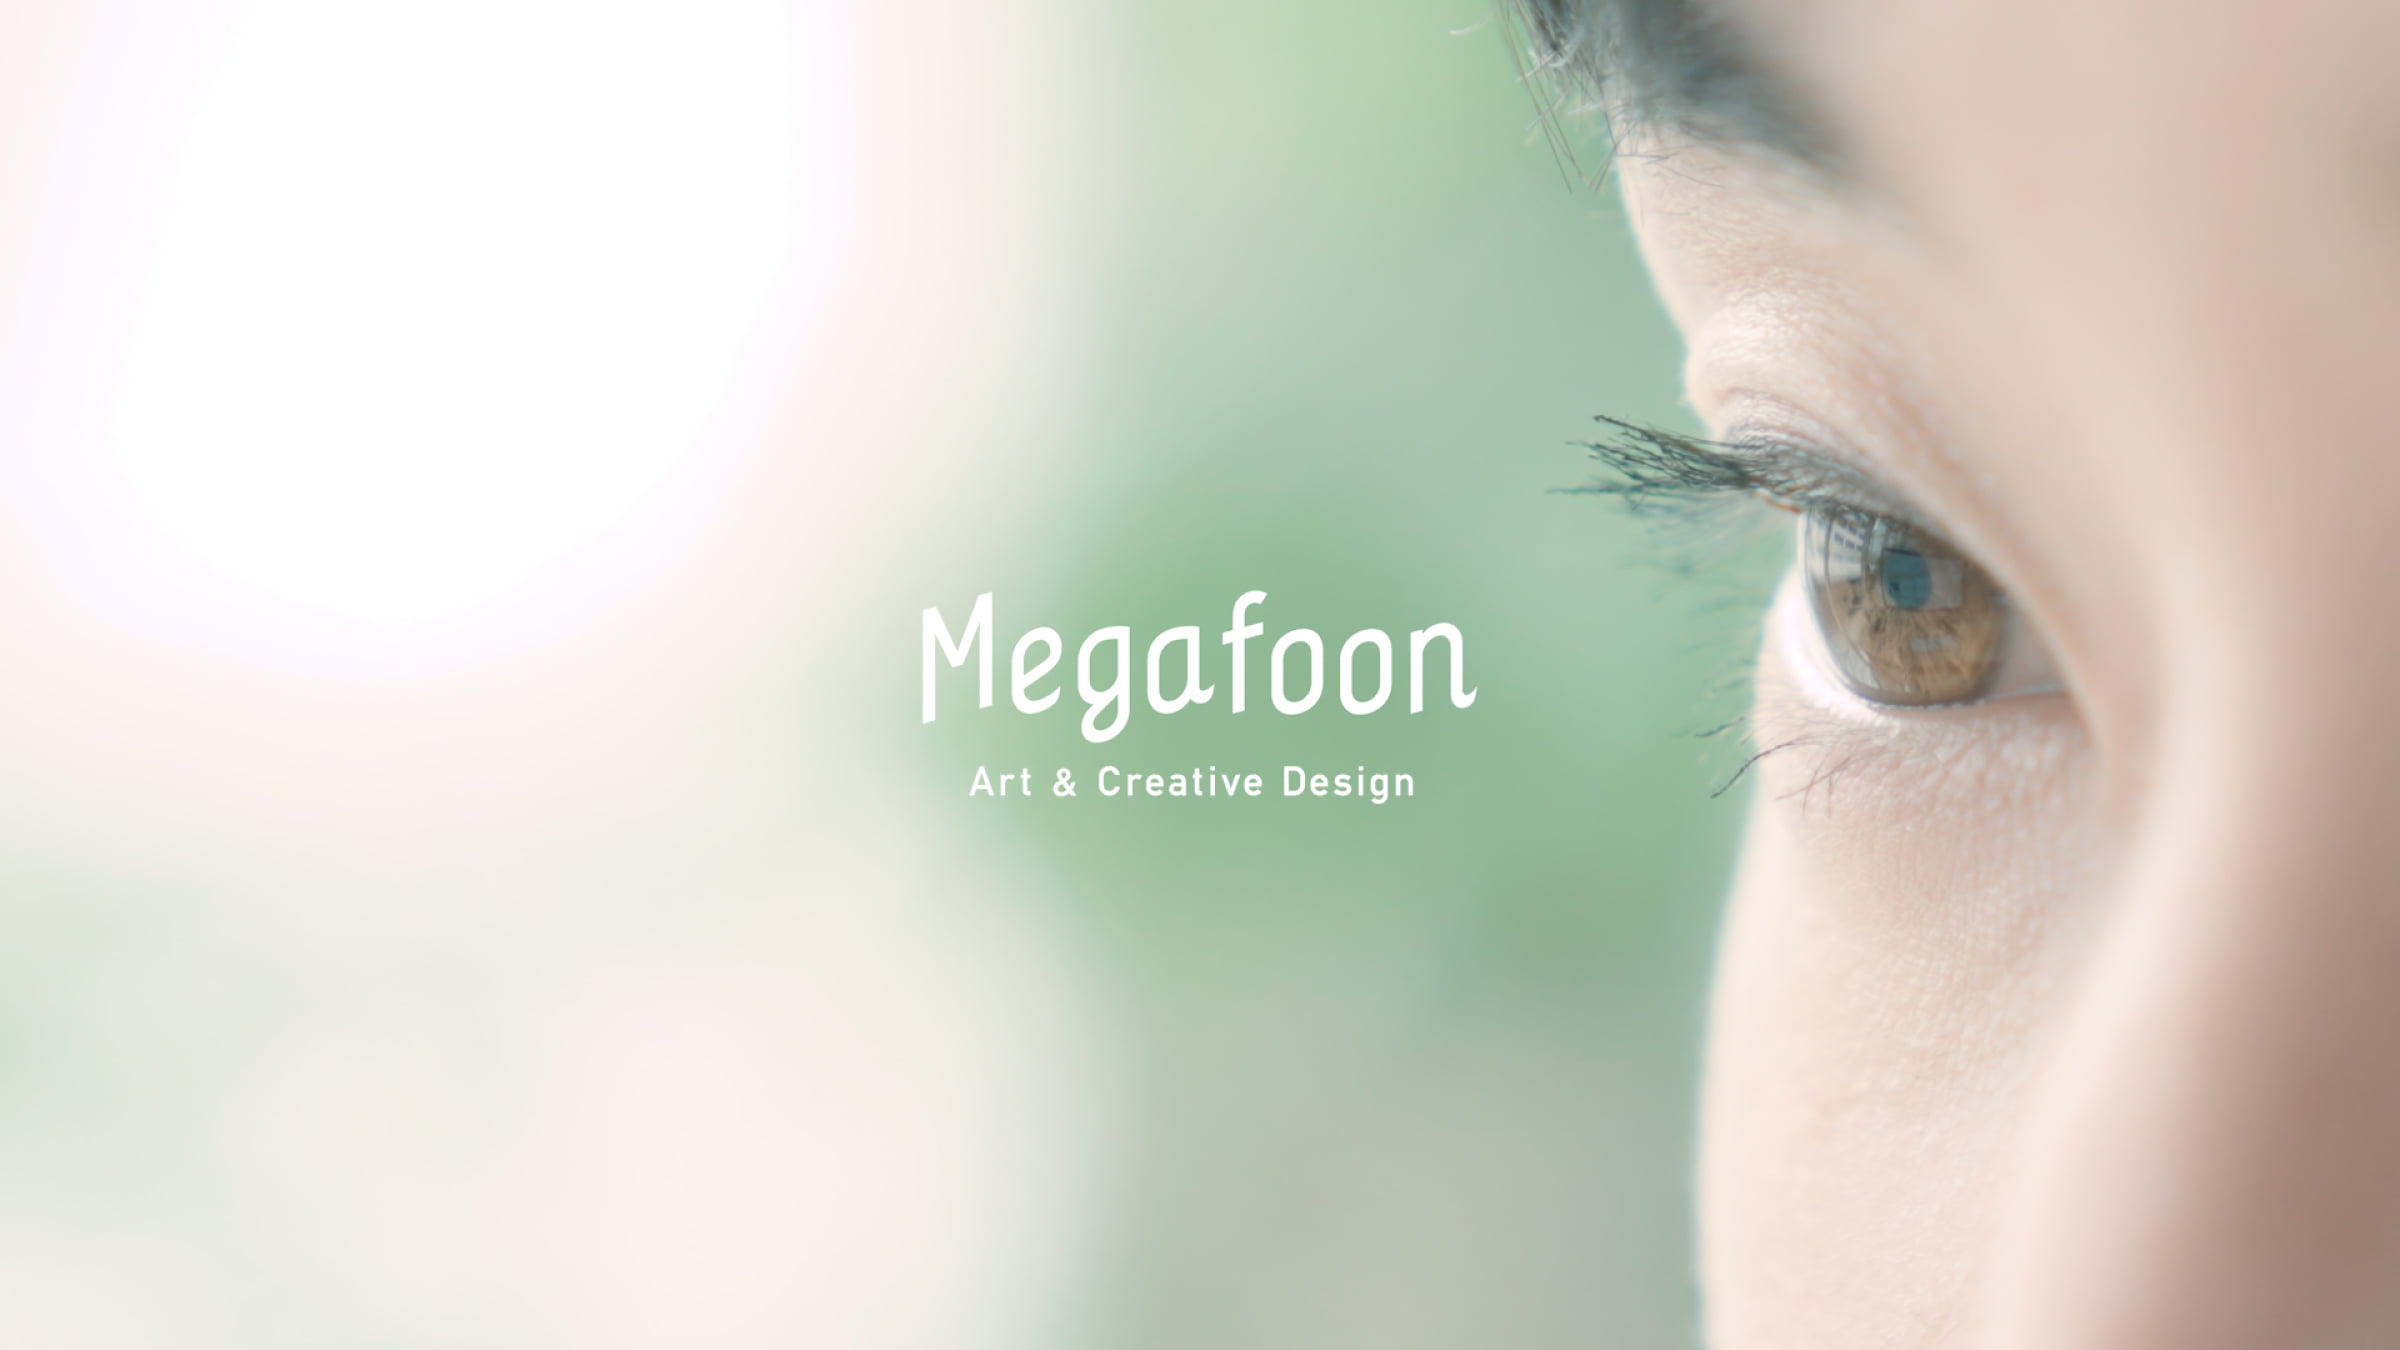 MEGAFOON | CONCEPT MOVIE